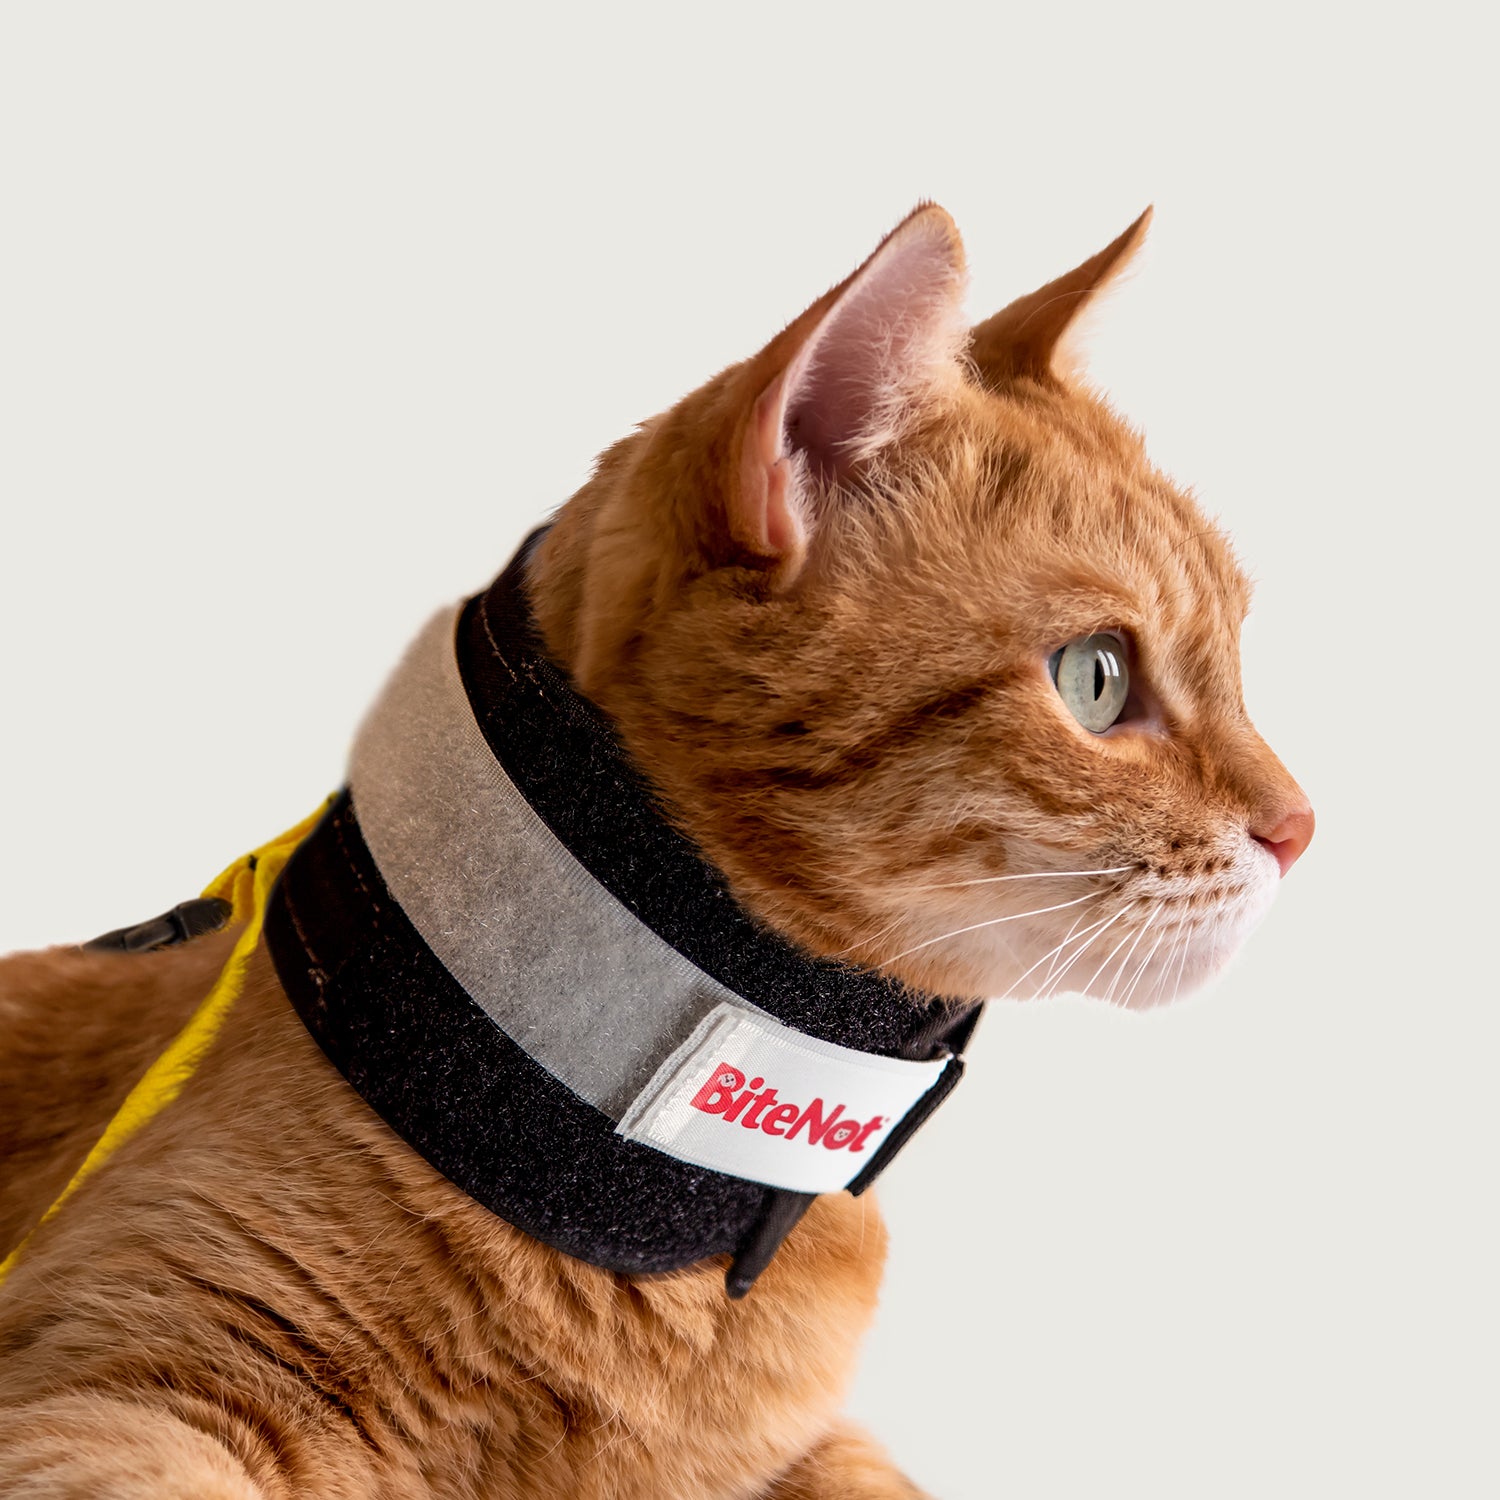 bitenot collar for felines from kvp